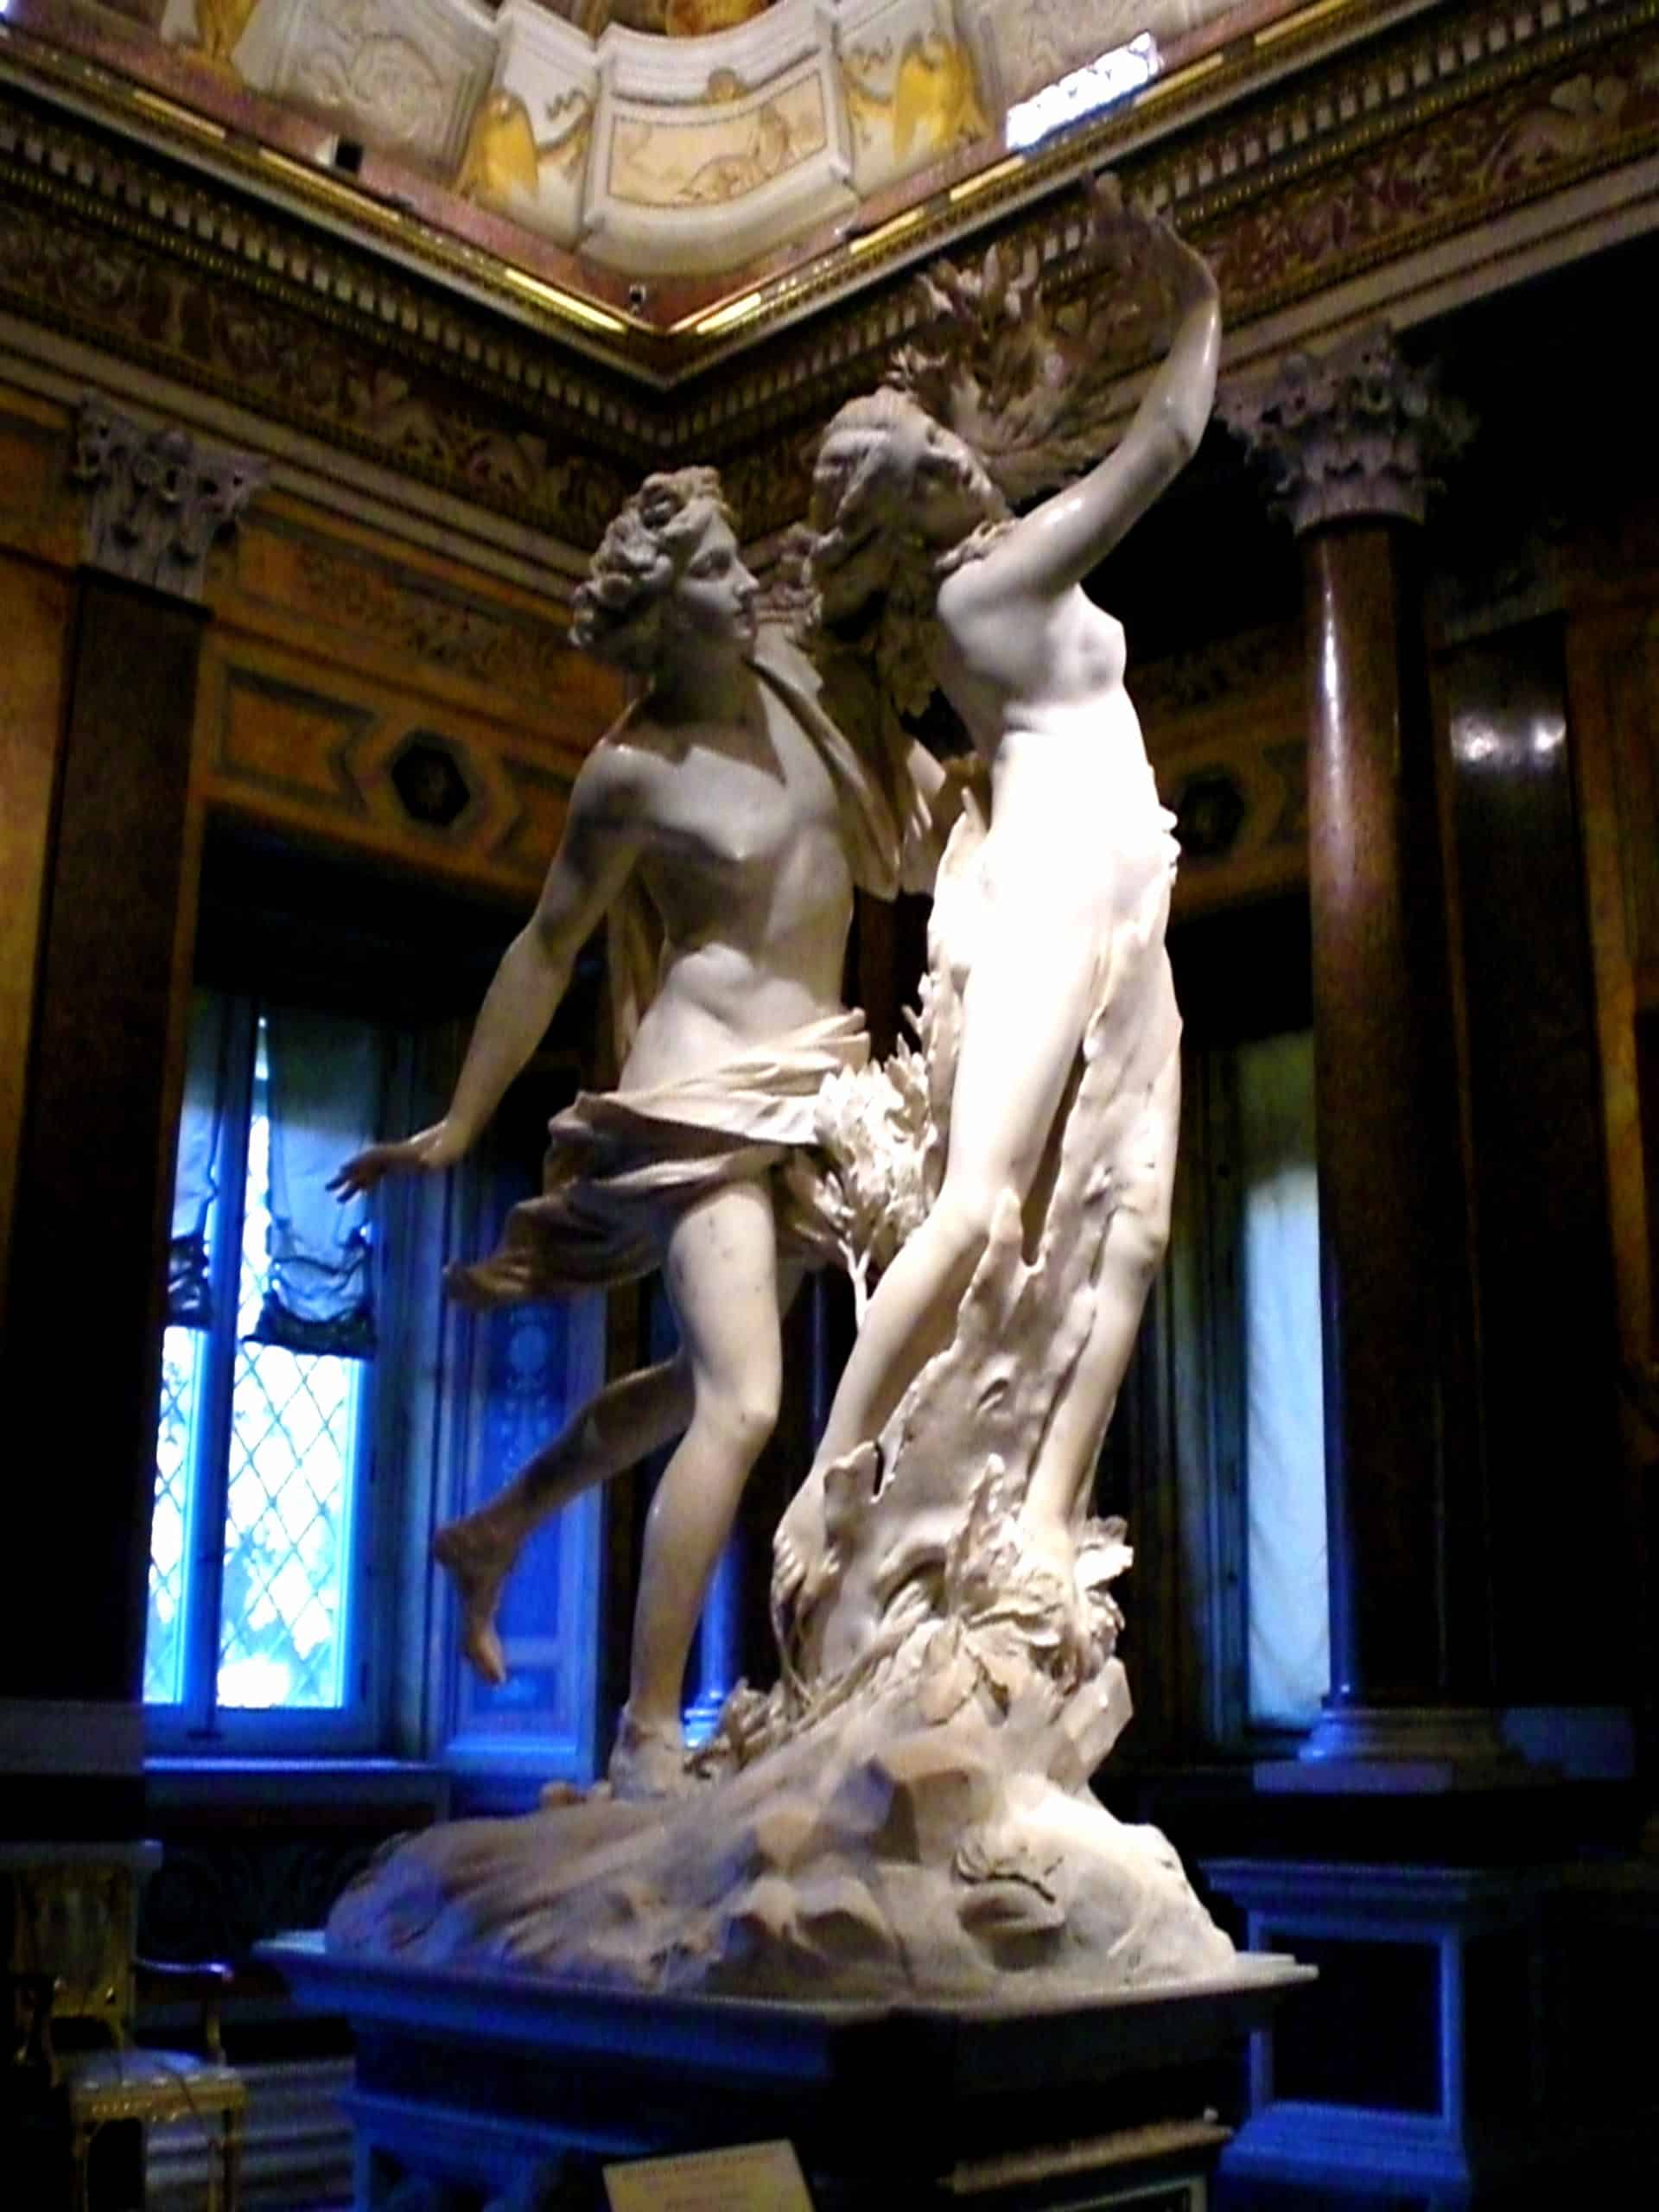 Die Skulptur "Apollo und Daphne" von Bernini in der Galleria Borghese.